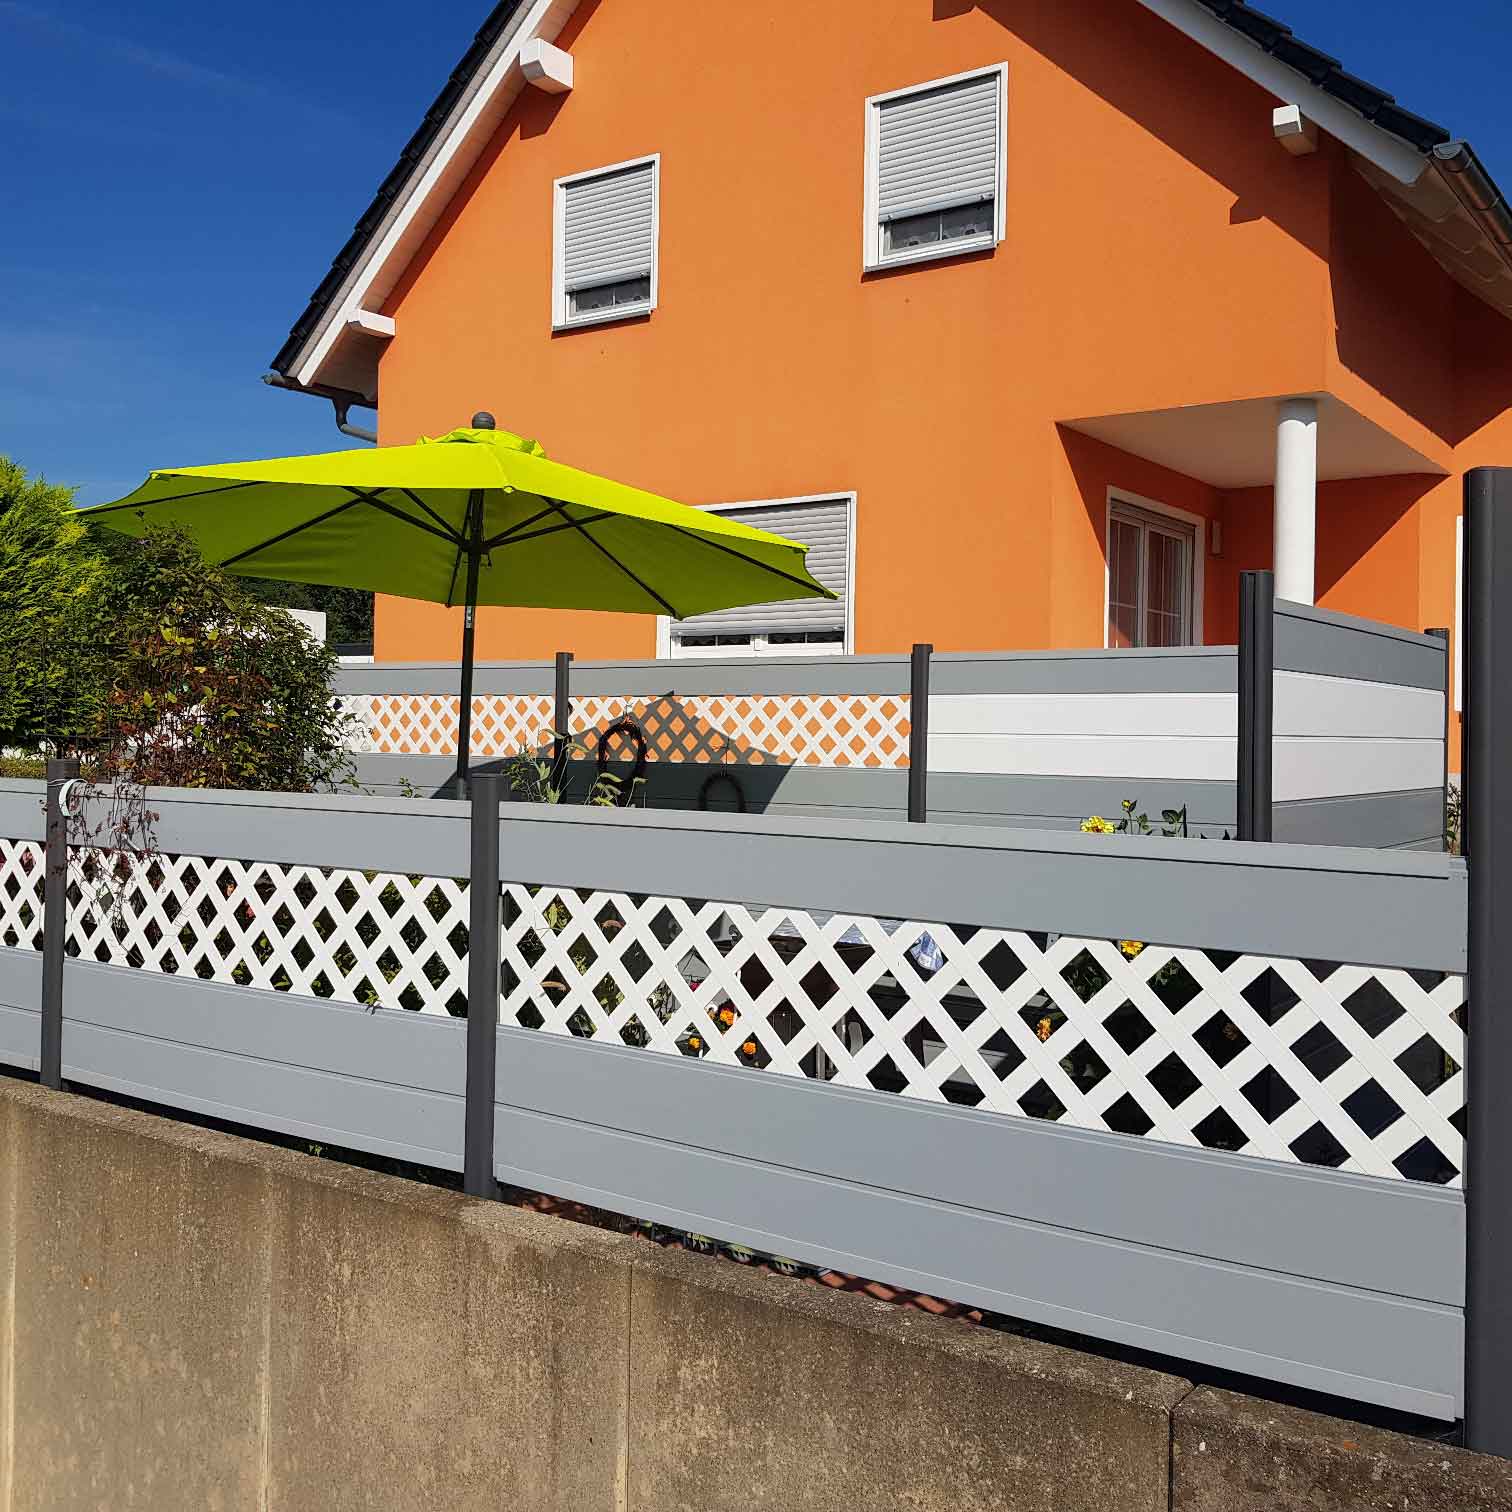 Mehrfarbiger Sichtschutz in Weiß, Grau und Anthrazit, mit Rankgitterelementen um eine Terrasse